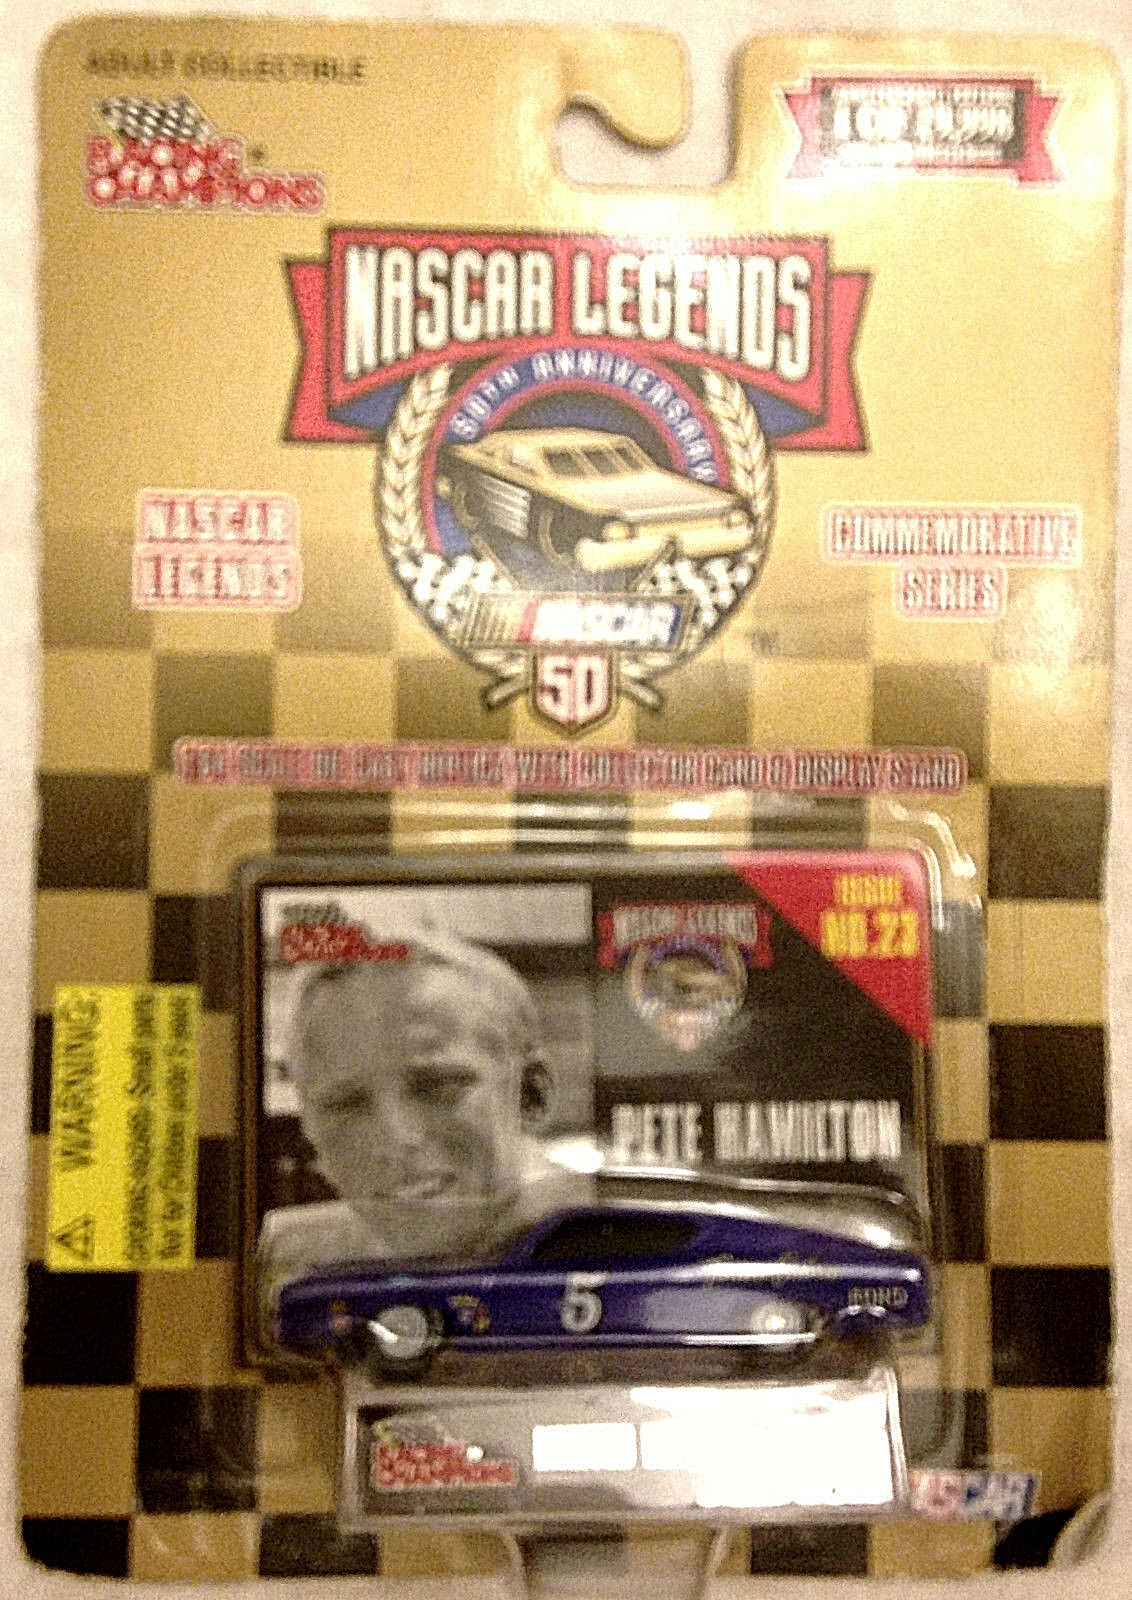 '98 Racing Champions, #5 Pete Hamilton Nascar Legends, Diecast Race Car - $14.95